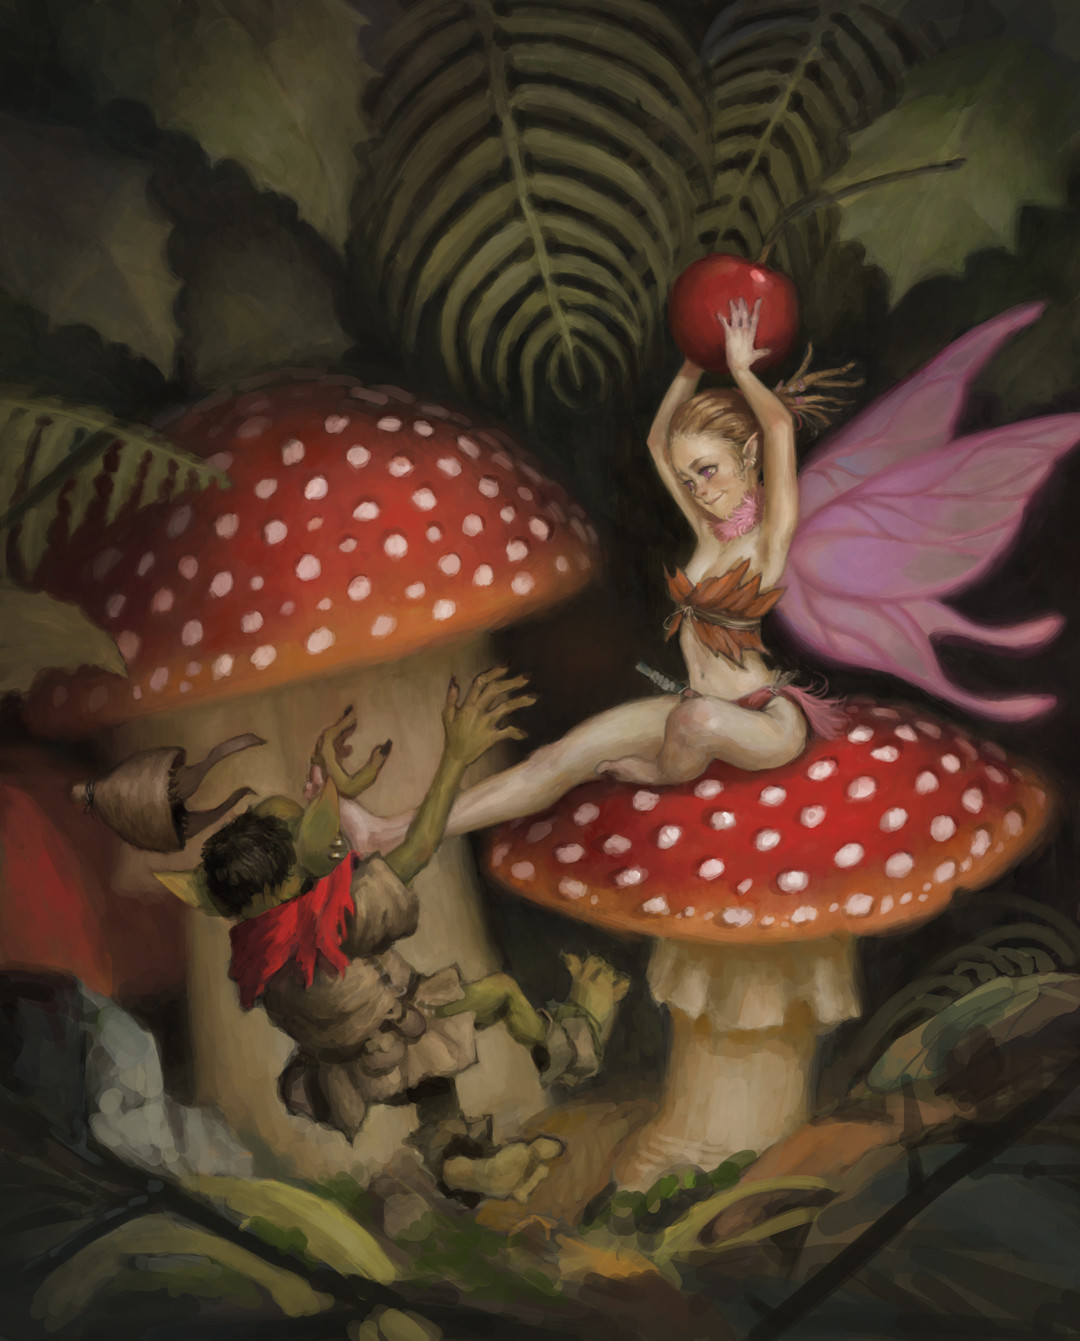 Fantasy Mushroom Fairy, 5D Diamond Painting Kits